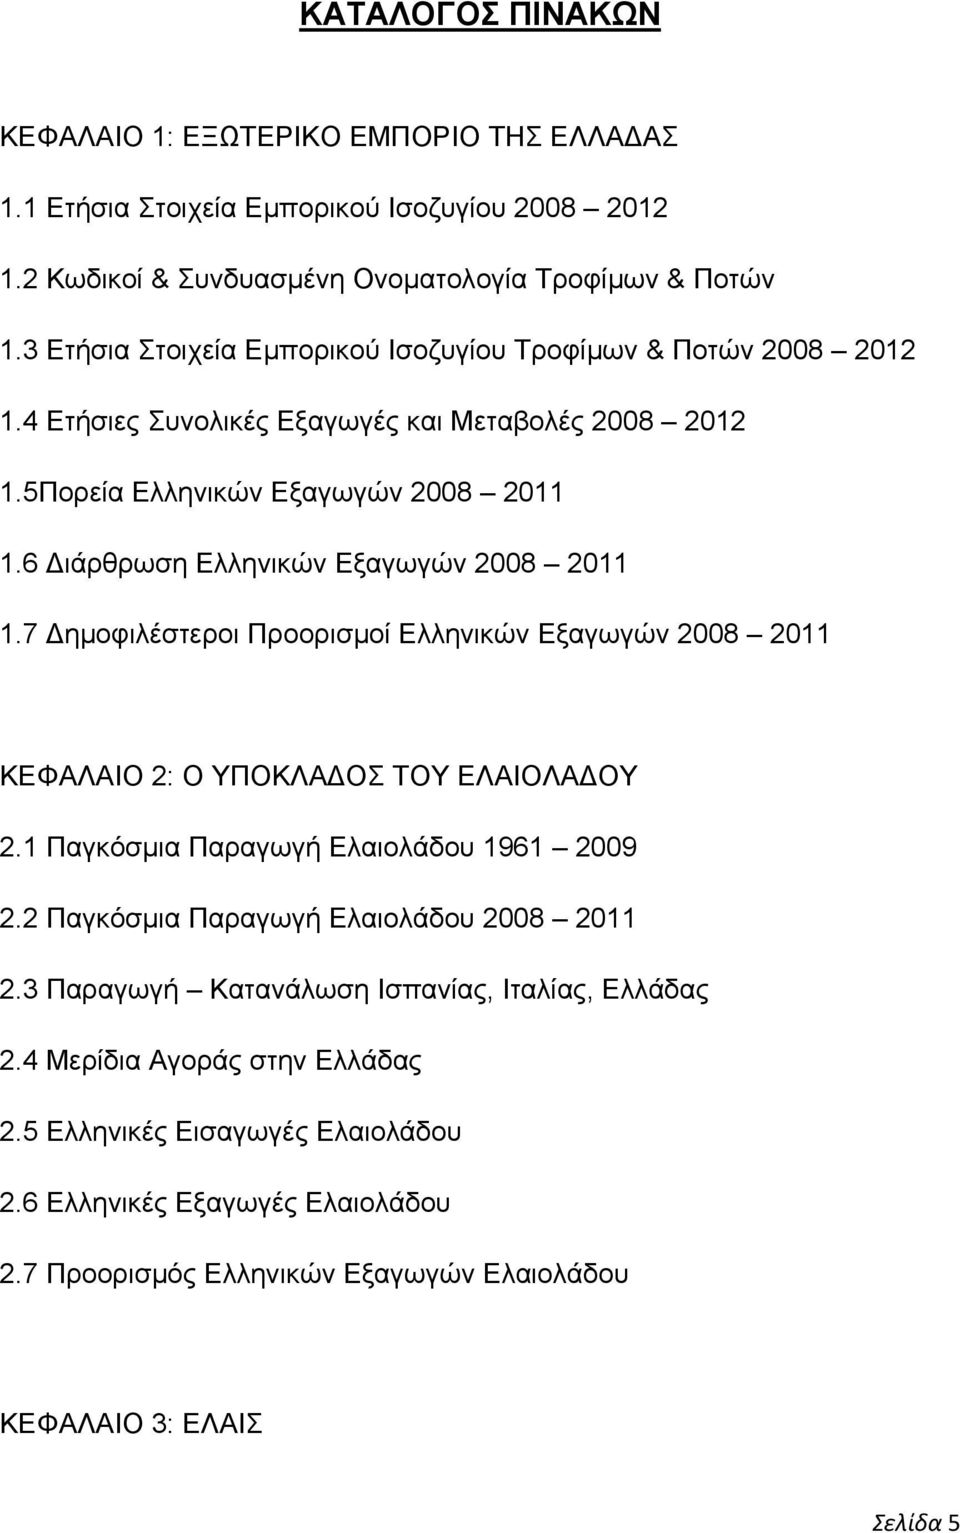 6 Διάρθρωση Ελληνικών Εξαγωγών 2008 2011 1.7 Δημοφιλέστεροι Προορισμοί Ελληνικών Εξαγωγών 2008 2011 ΚΕΦΑΛΑΙΟ 2: Ο ΥΠΟΚΛΑΔΟΣ ΤΟΥ ΕΛΑΙΟΛΑΔΟΥ 2.1 Παγκόσμια Παραγωγή Ελαιολάδου 1961 2009 2.